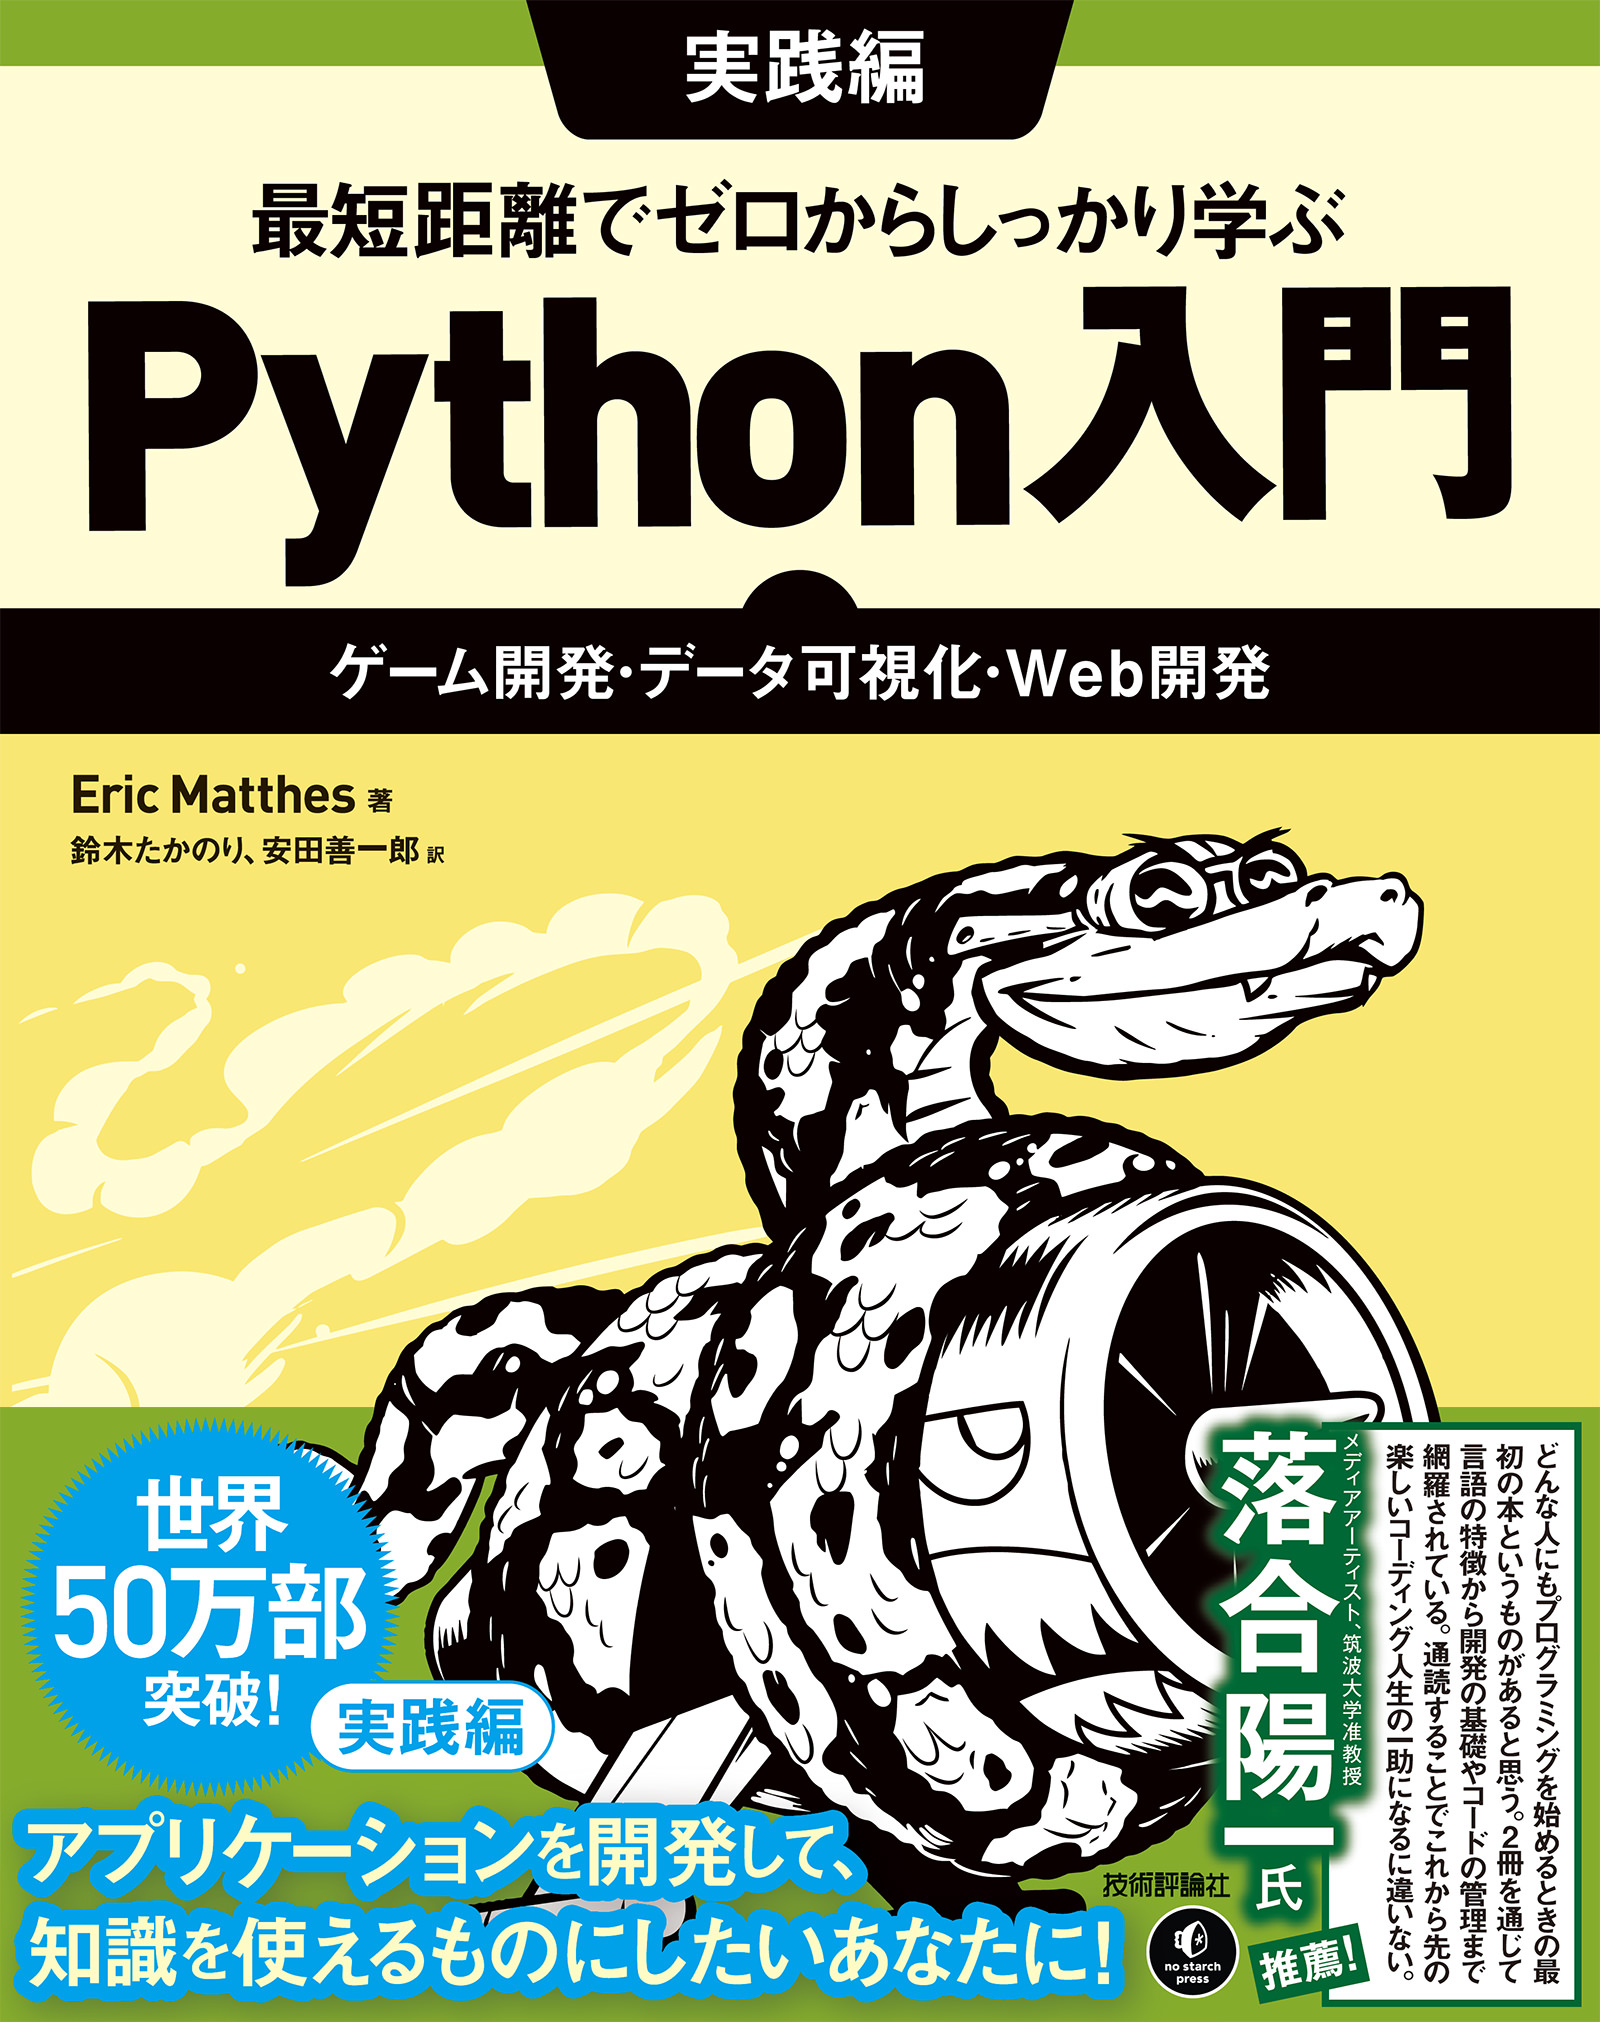 Pythonではじめるゲーム制作 超入門 知識ゼロからのプログラミングアルゴ…